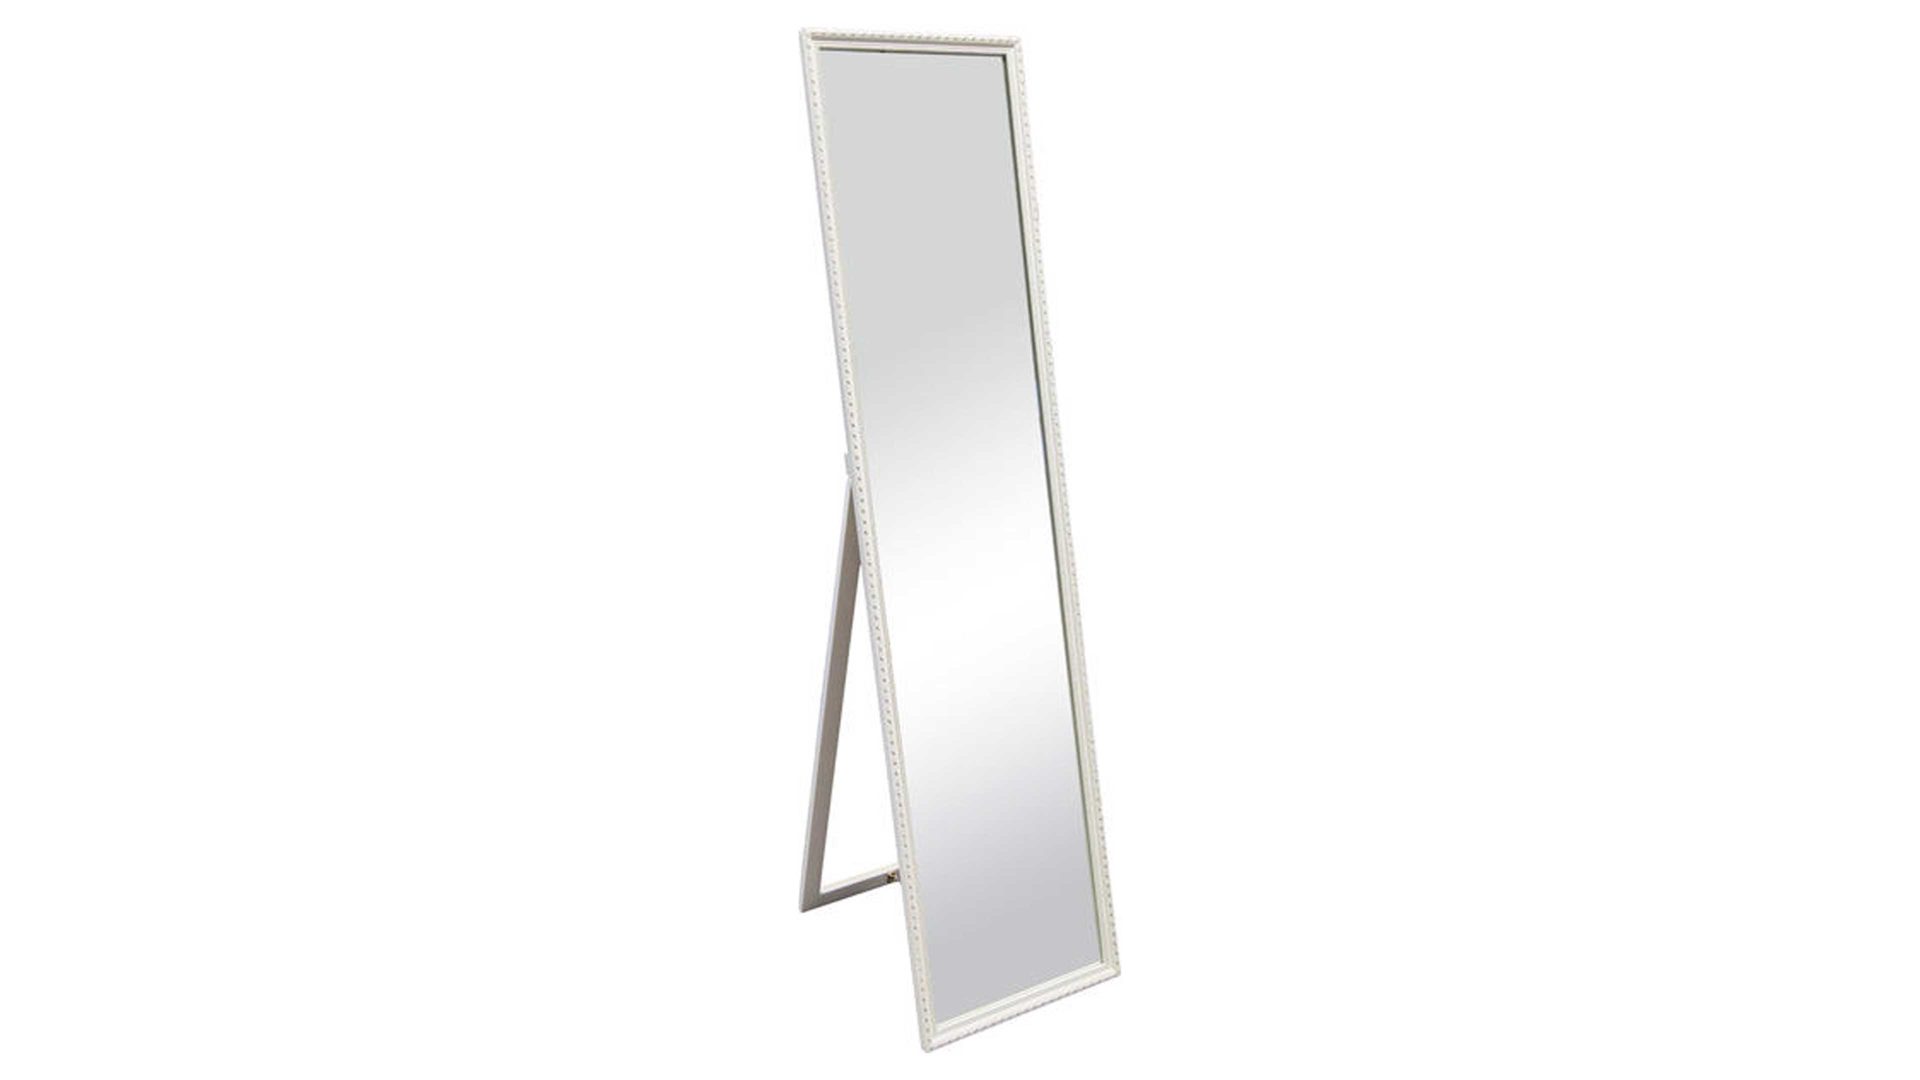 Standspiegel Spiegelprofi aus Spiegel in Weiß Rahmen-Standspiegel Lisa weißer Rahmen & Fuß – Höhe ca. 160 cm